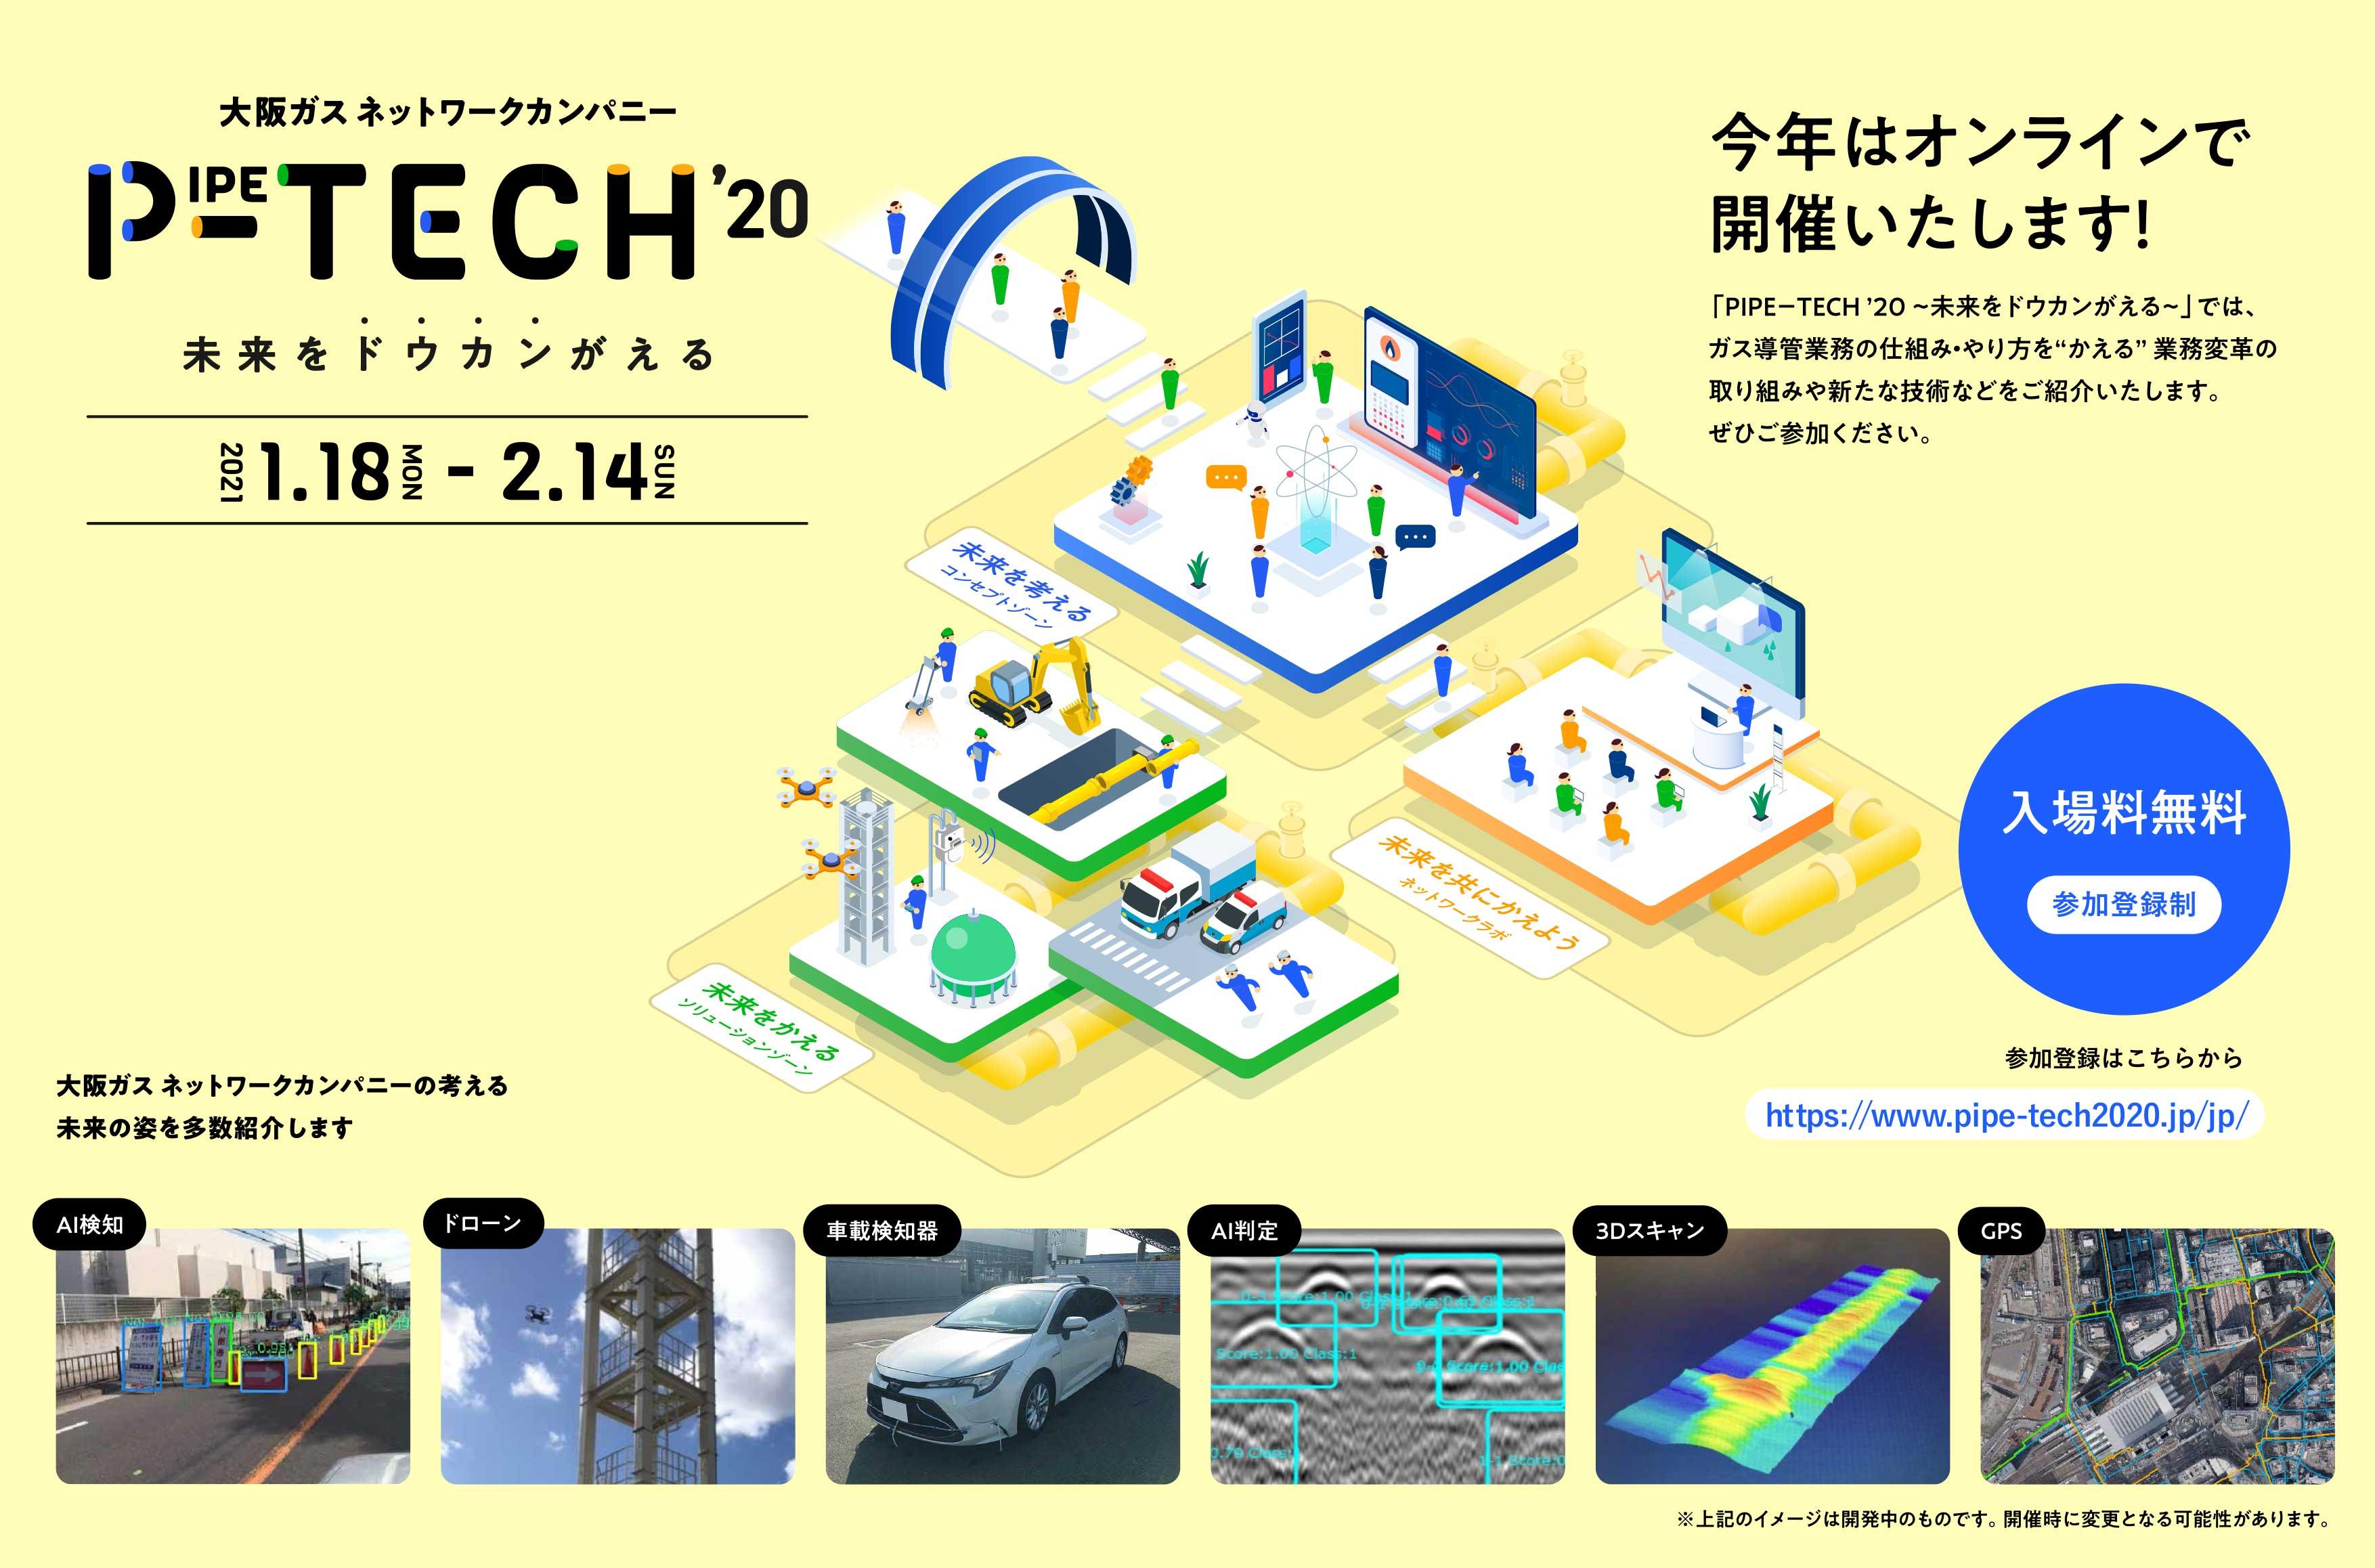 大阪ガス(株)ネットワークカンパニーは、オンライン技術展「PIPE-TECH '20」を開催いたします！